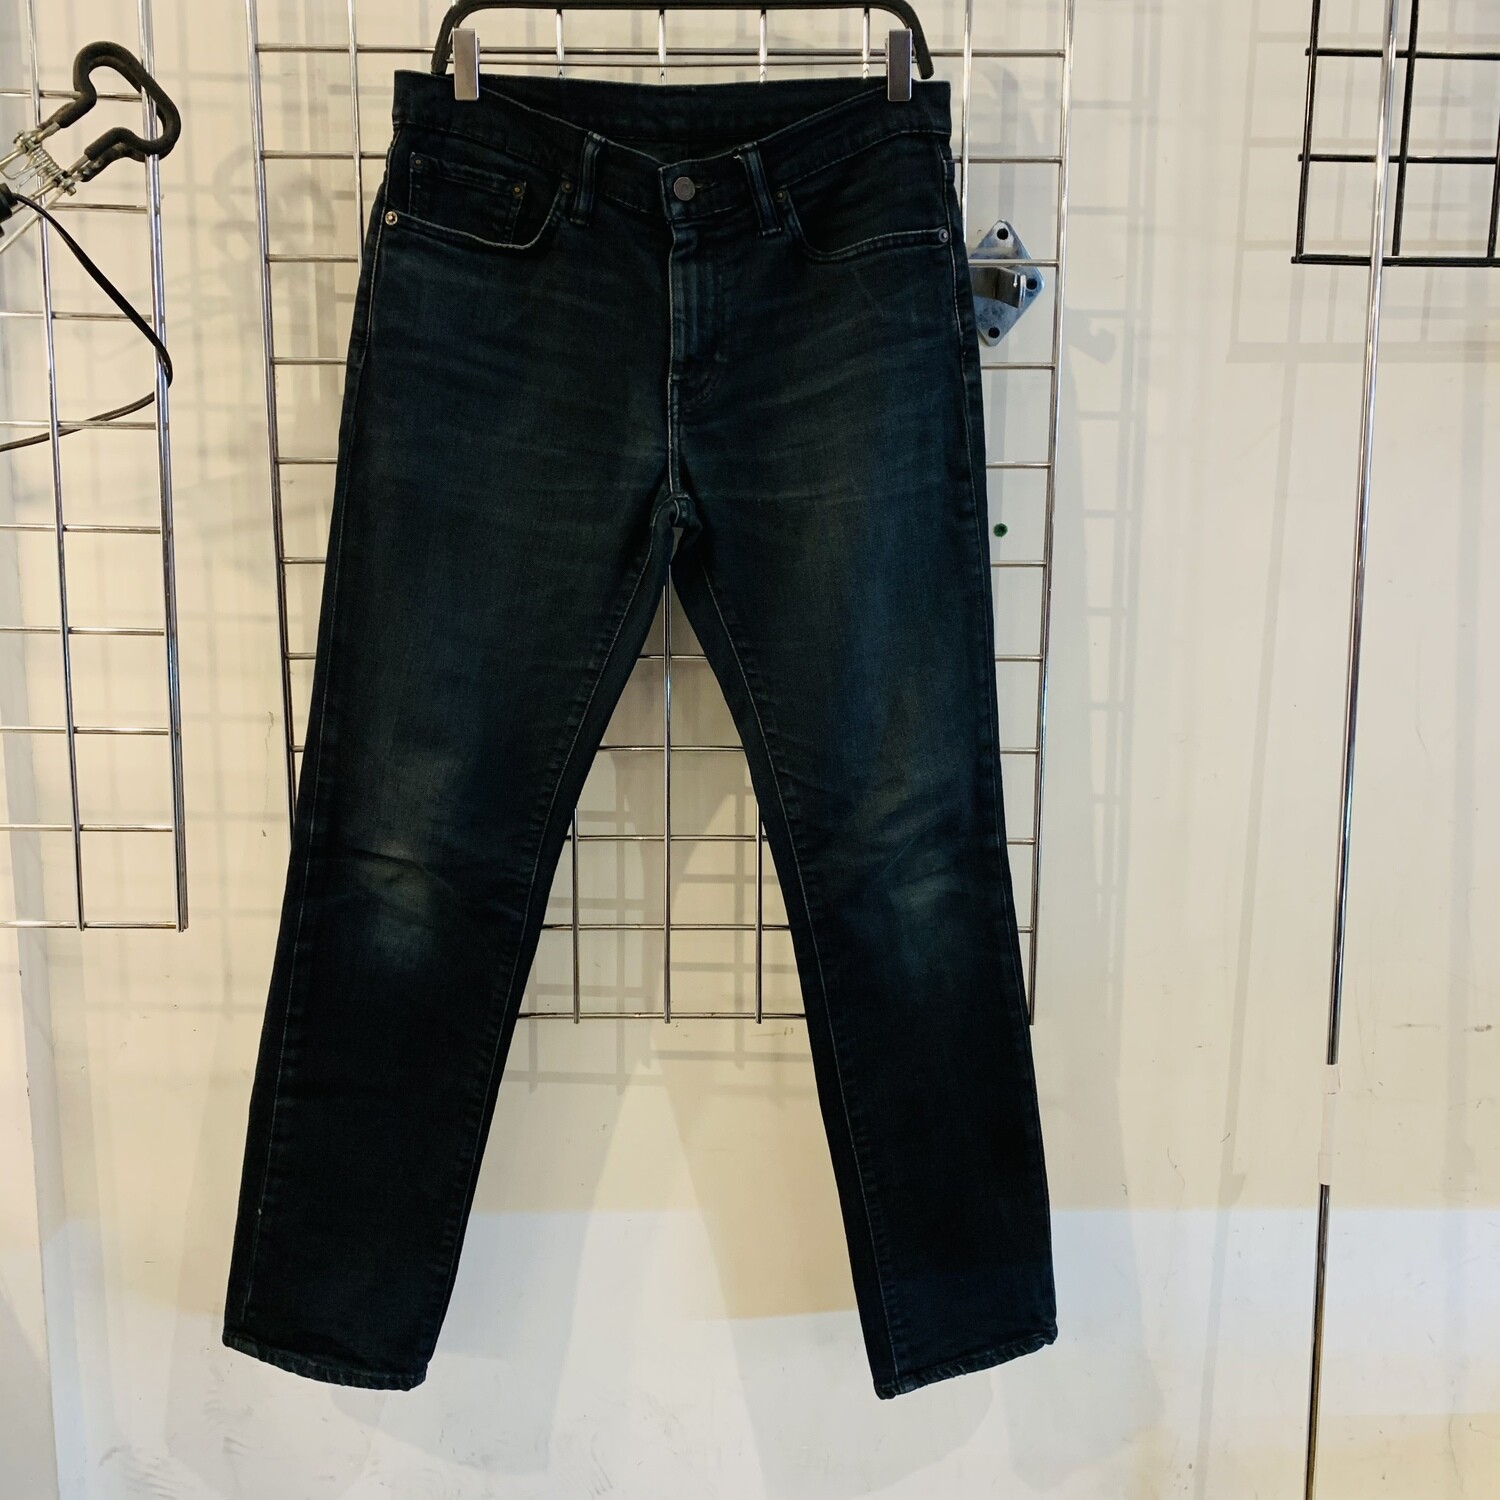 Size 32x32 Levi's 511 Slim Fit Jean